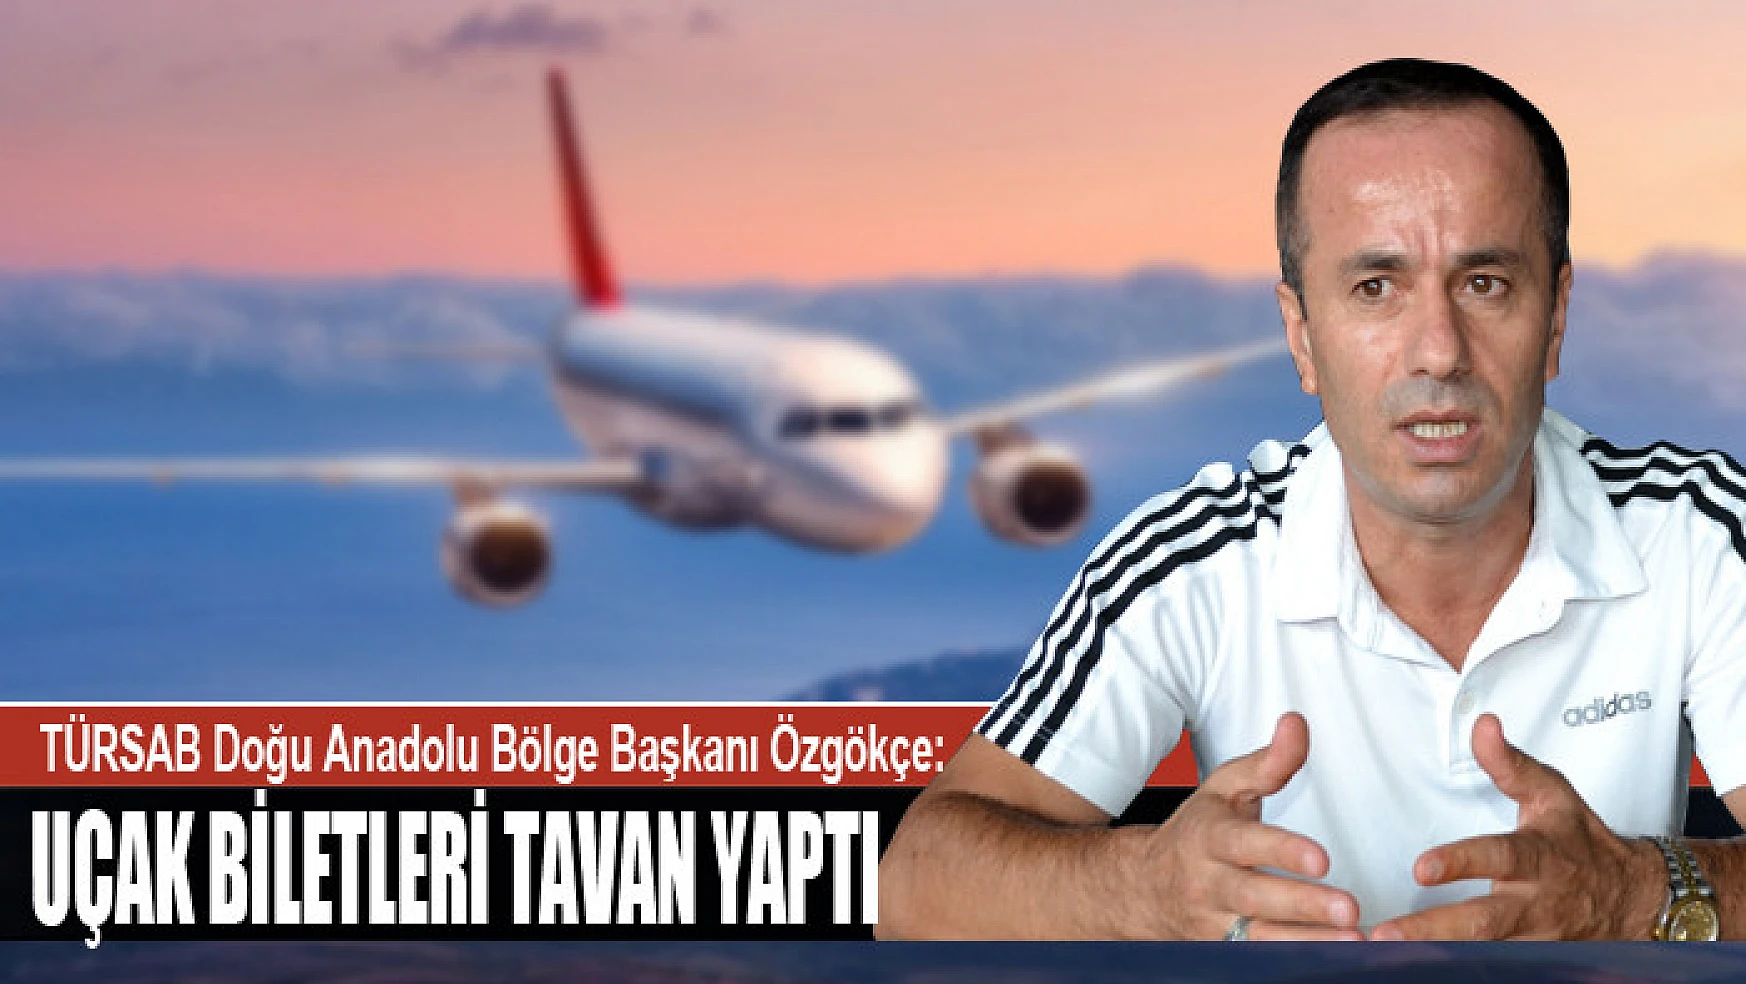 TÜRSAB Doğu Anadolu Bölge Başkanı Özgökçe: Uçak biletleri tavan yaptı